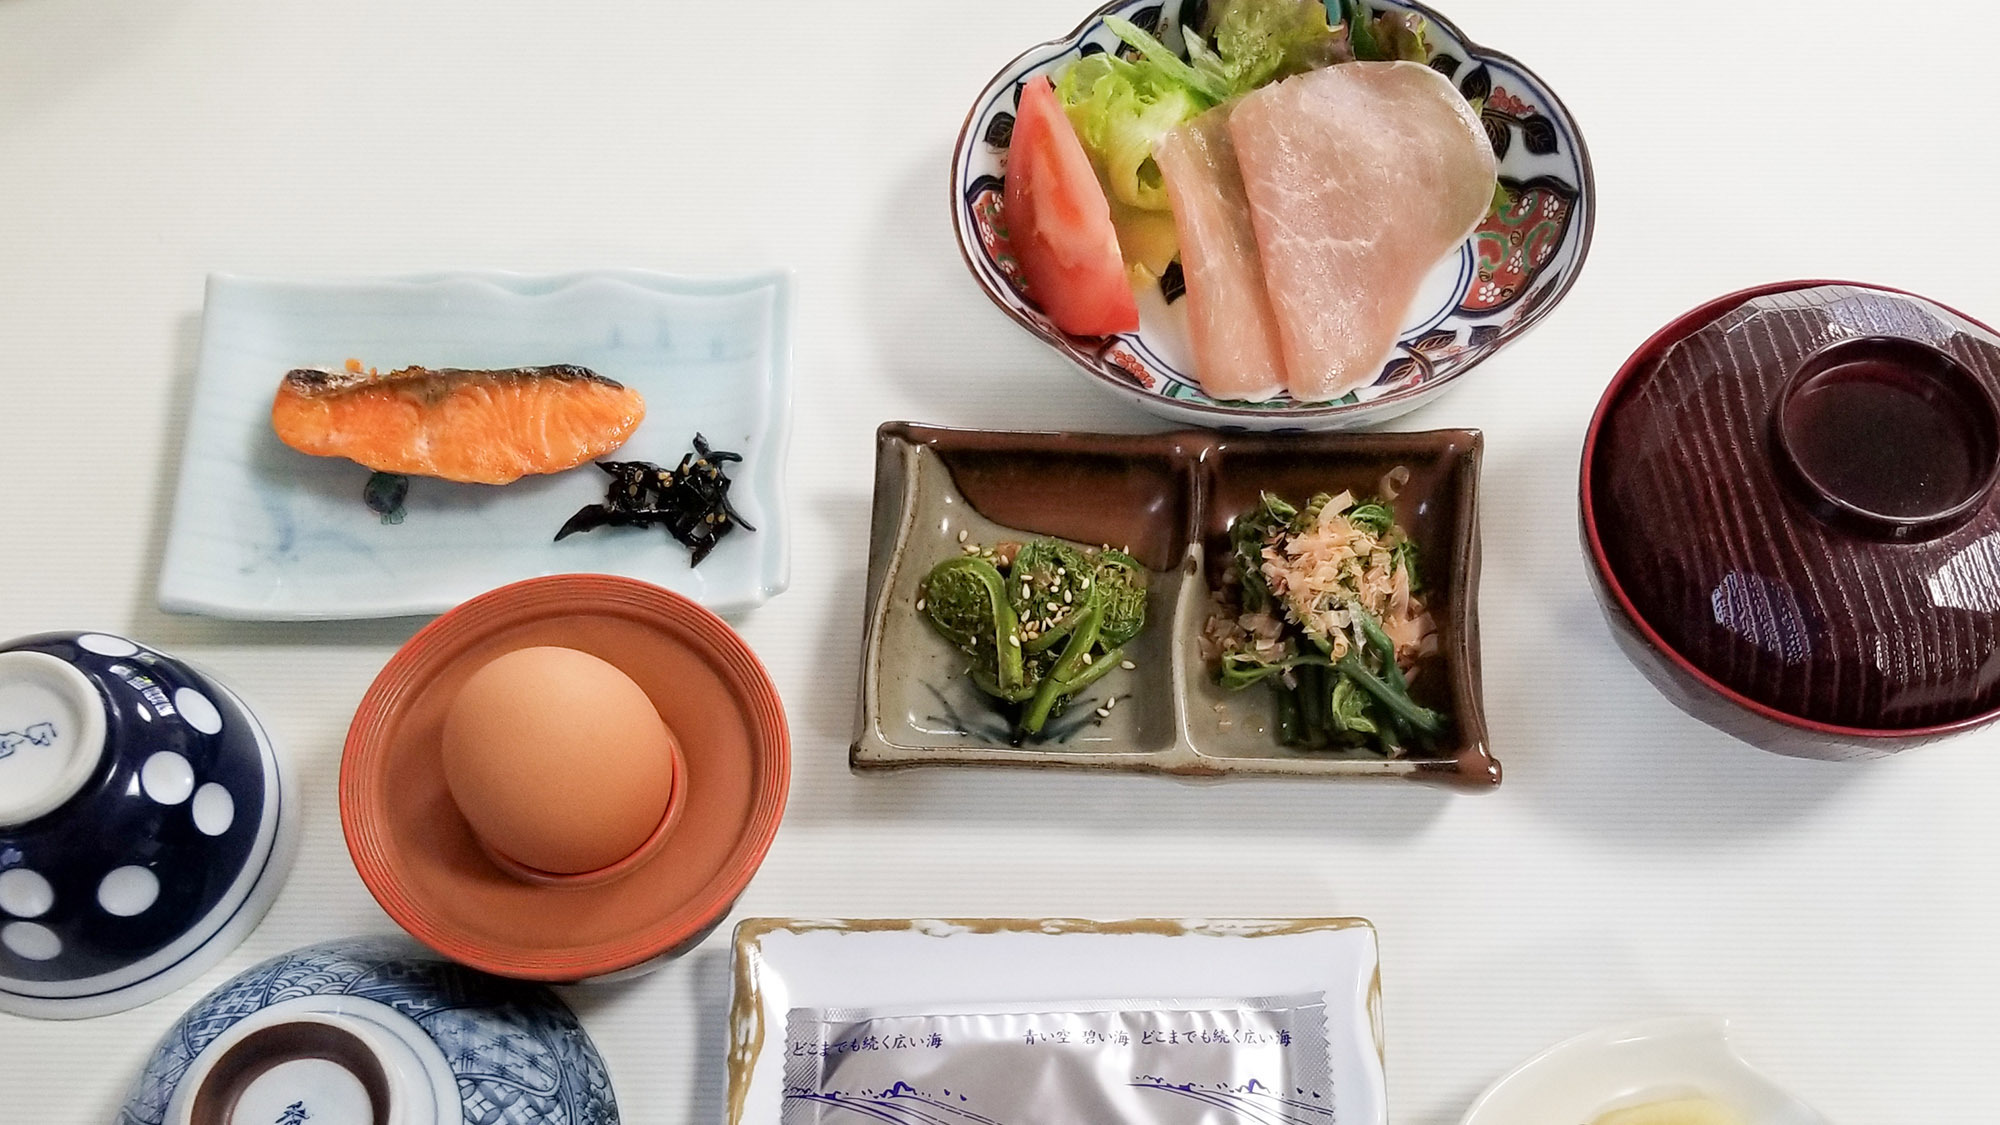 ・【朝食一例】山菜・お魚・ブランド卵などを使用した和朝食です